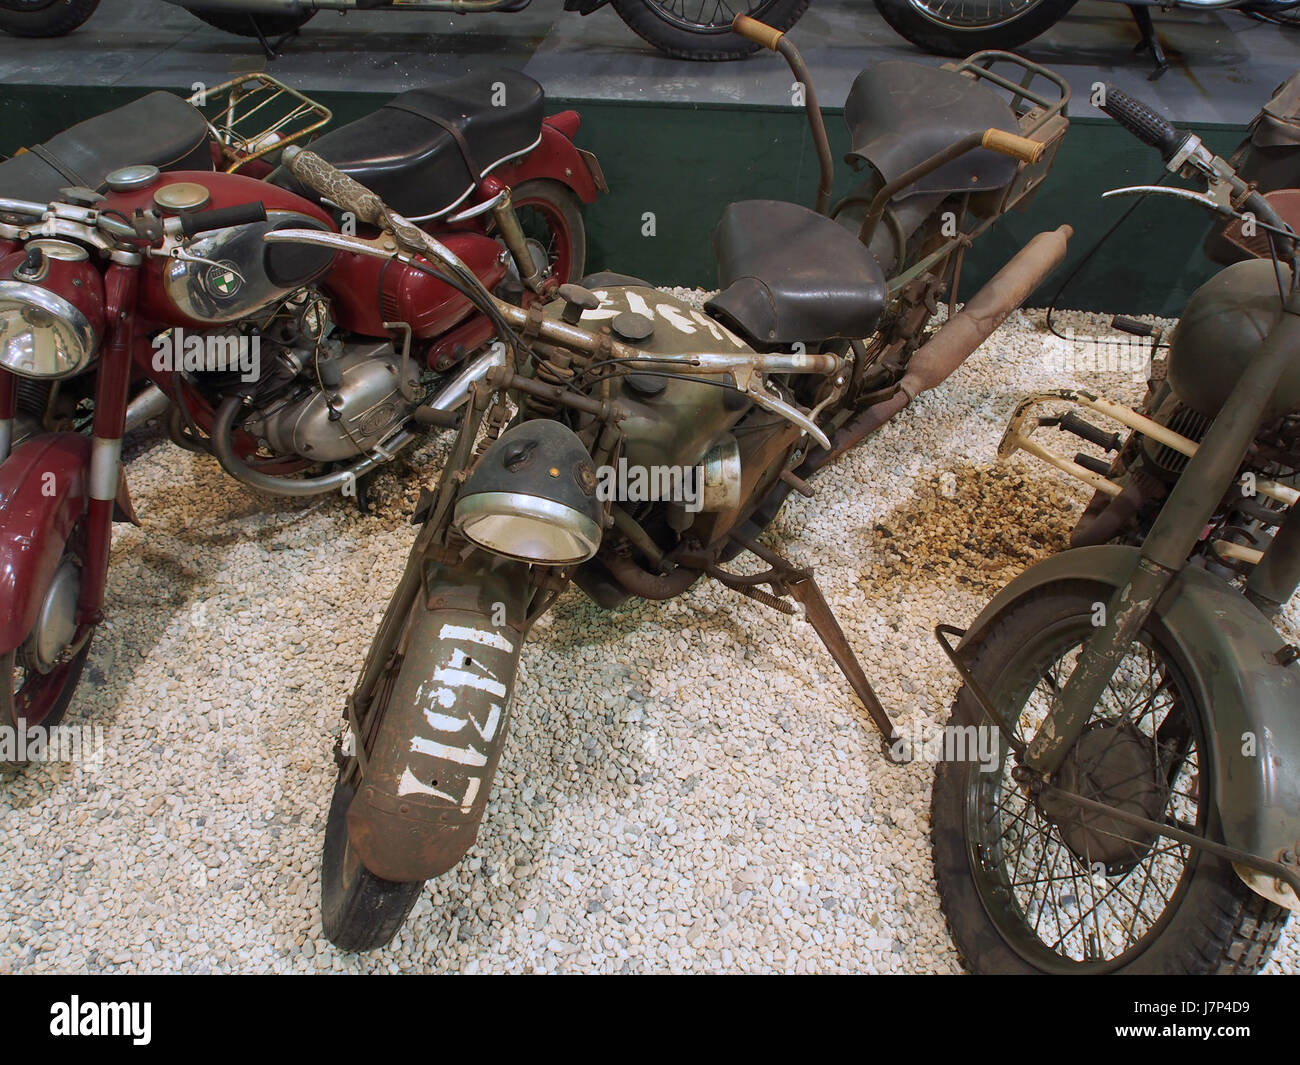 1939 Moto Guzzi Alce Motorcycle pic1 Stock Photo